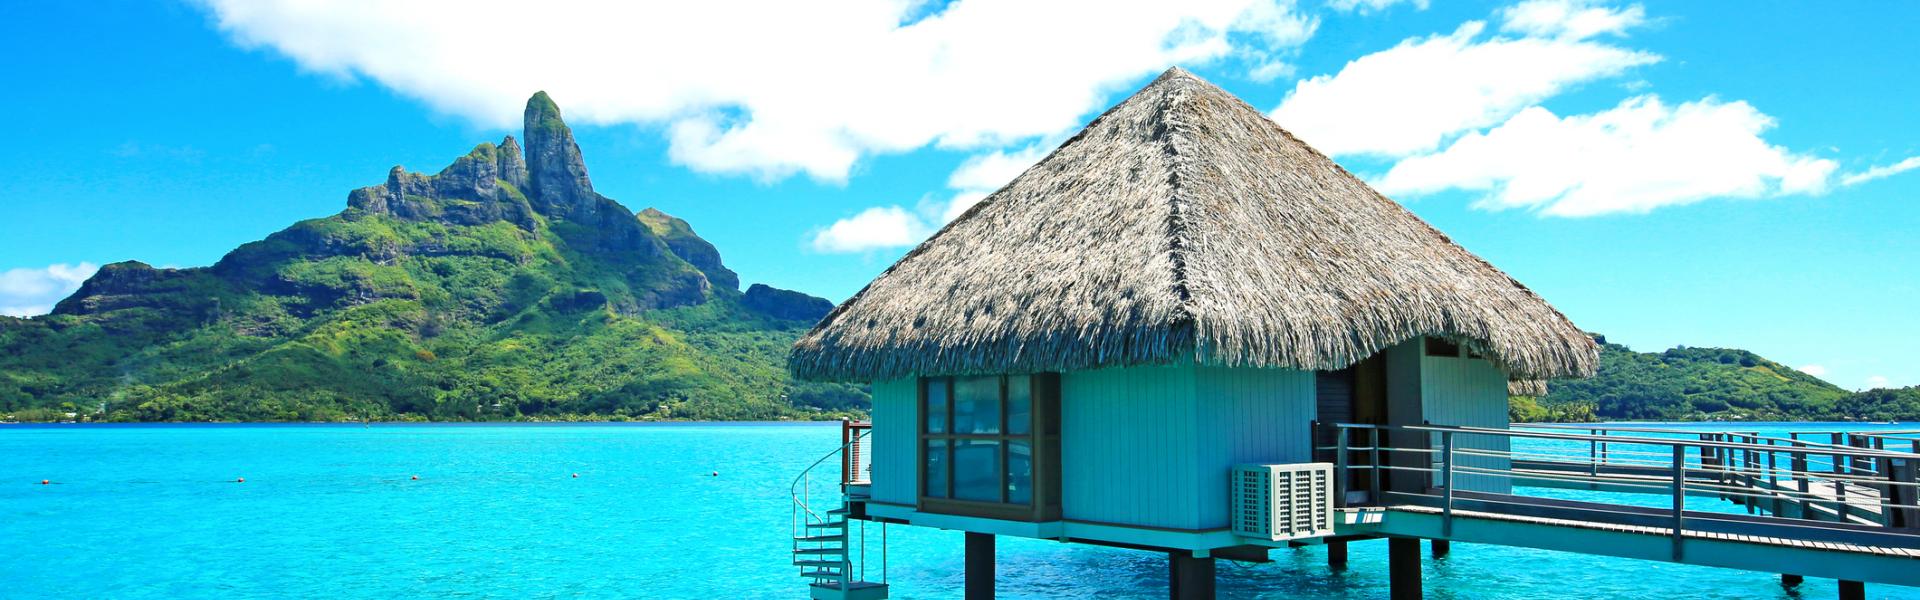 Case Vacanze e Appartamenti in Polinesia Francese in affitto - CaseVacanza.it